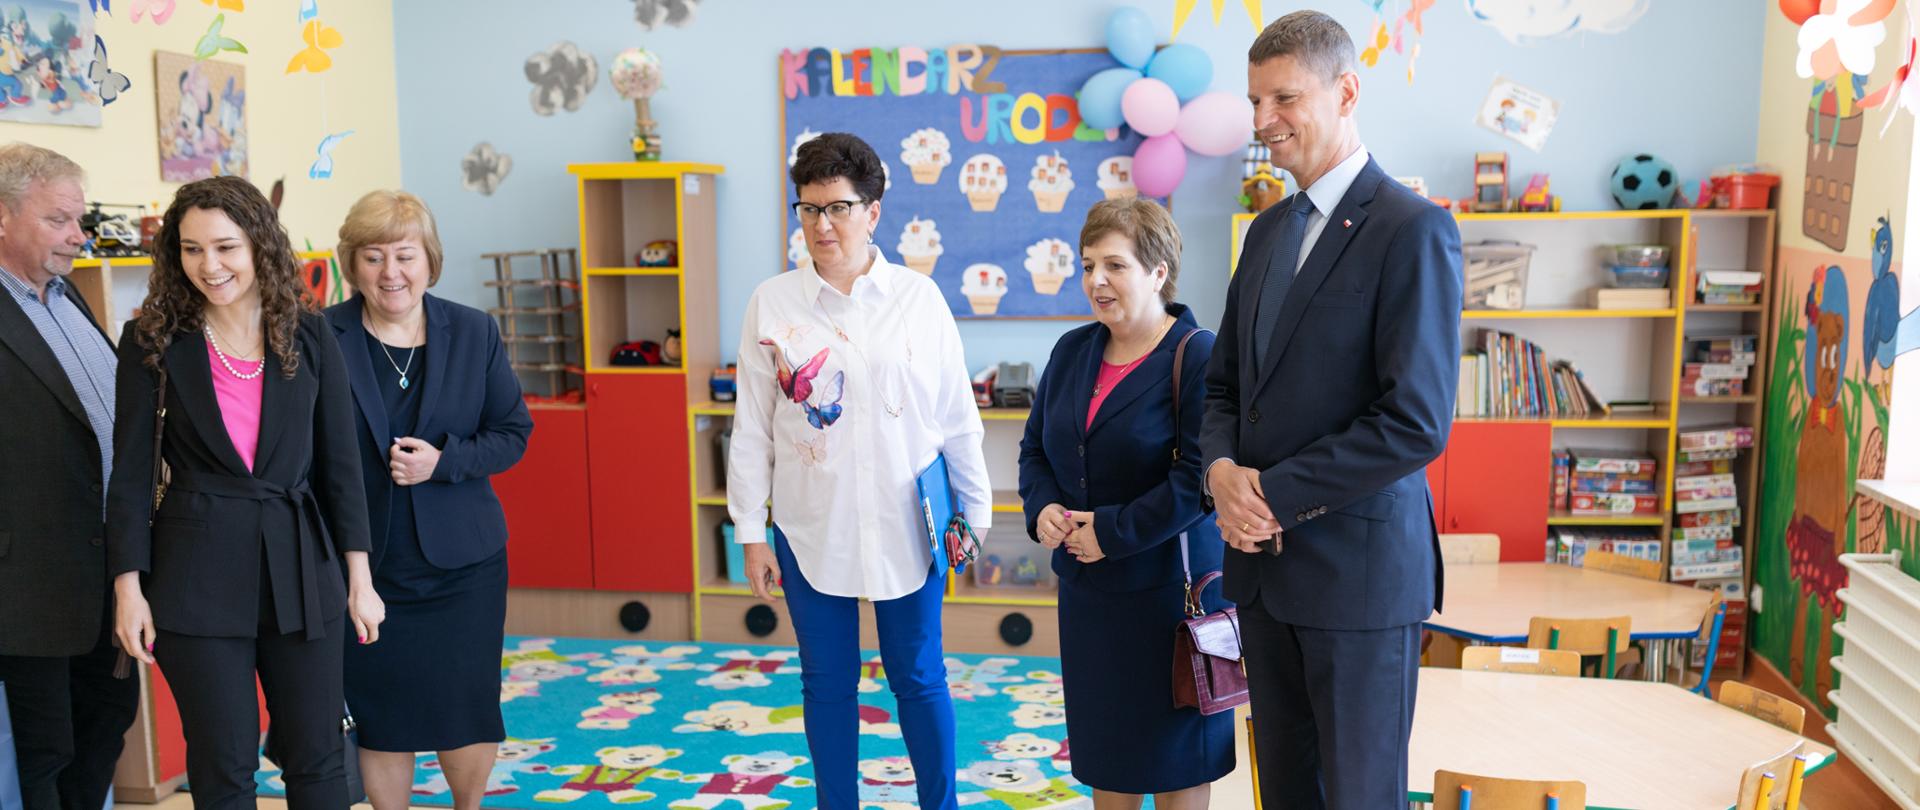 wiceminister Piontkowski, Justyna Orłowska oraz inni nauczyciele obserwują lekcje dzieci w czasie dnia nowych technologii w edukacji.
Dzień Nowych Technologii w Edukacji 